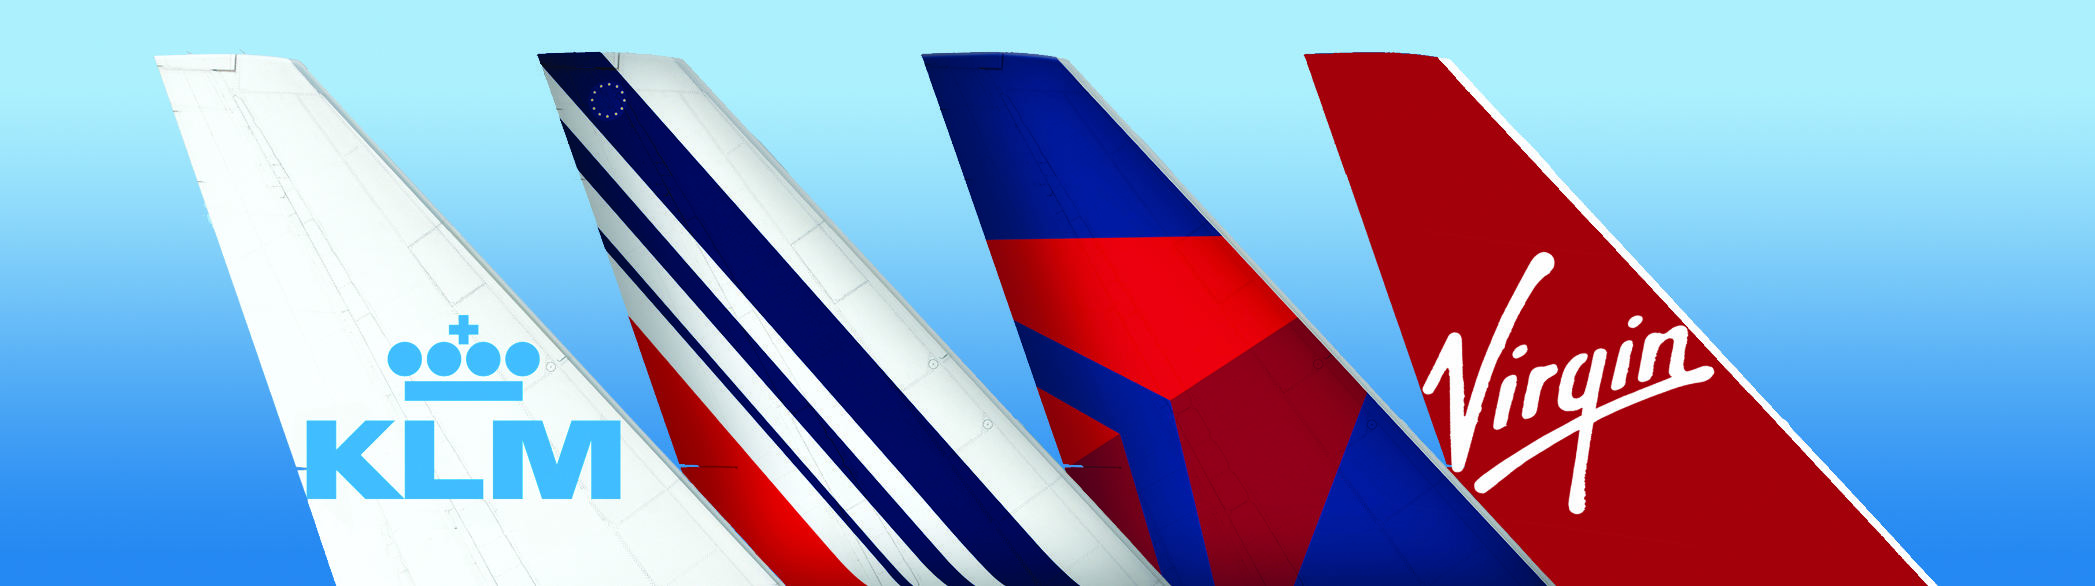 Air France, KLM, Delta et Virgin Atlantic volent de concert sur le transatlantique